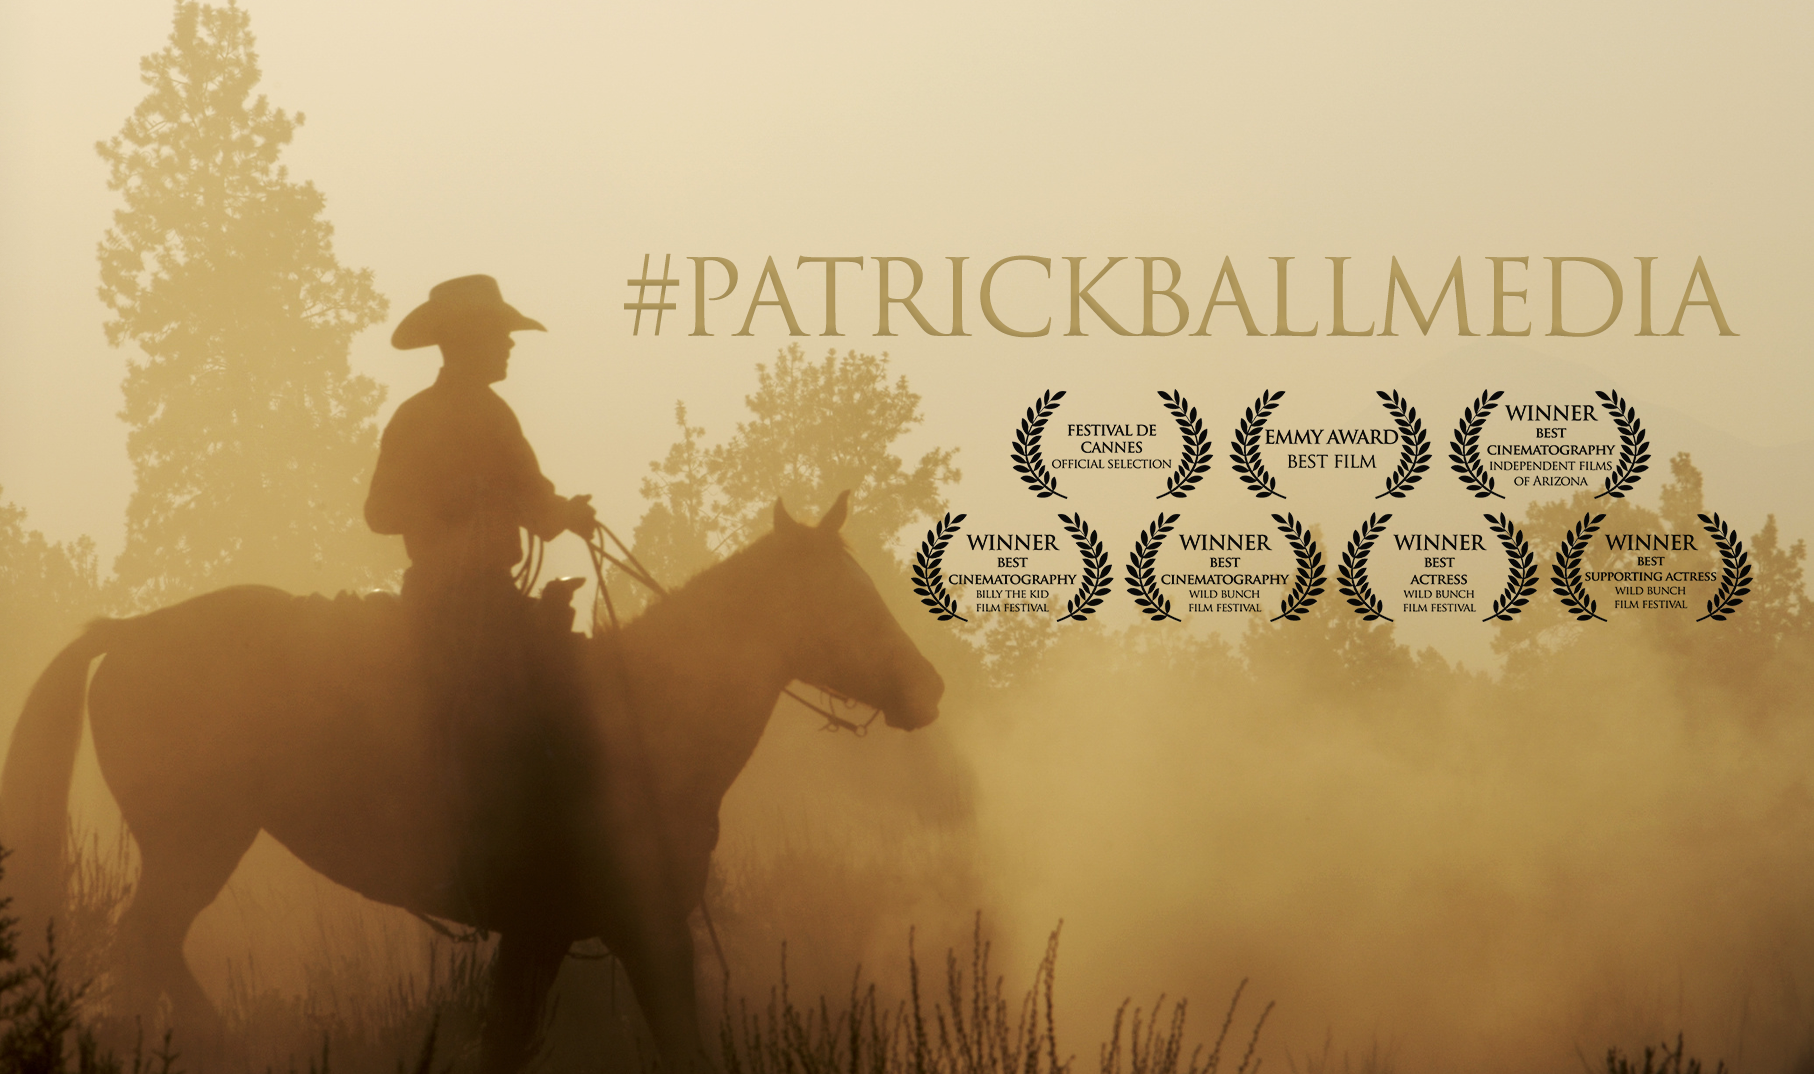 Patrick Ball Media LLC